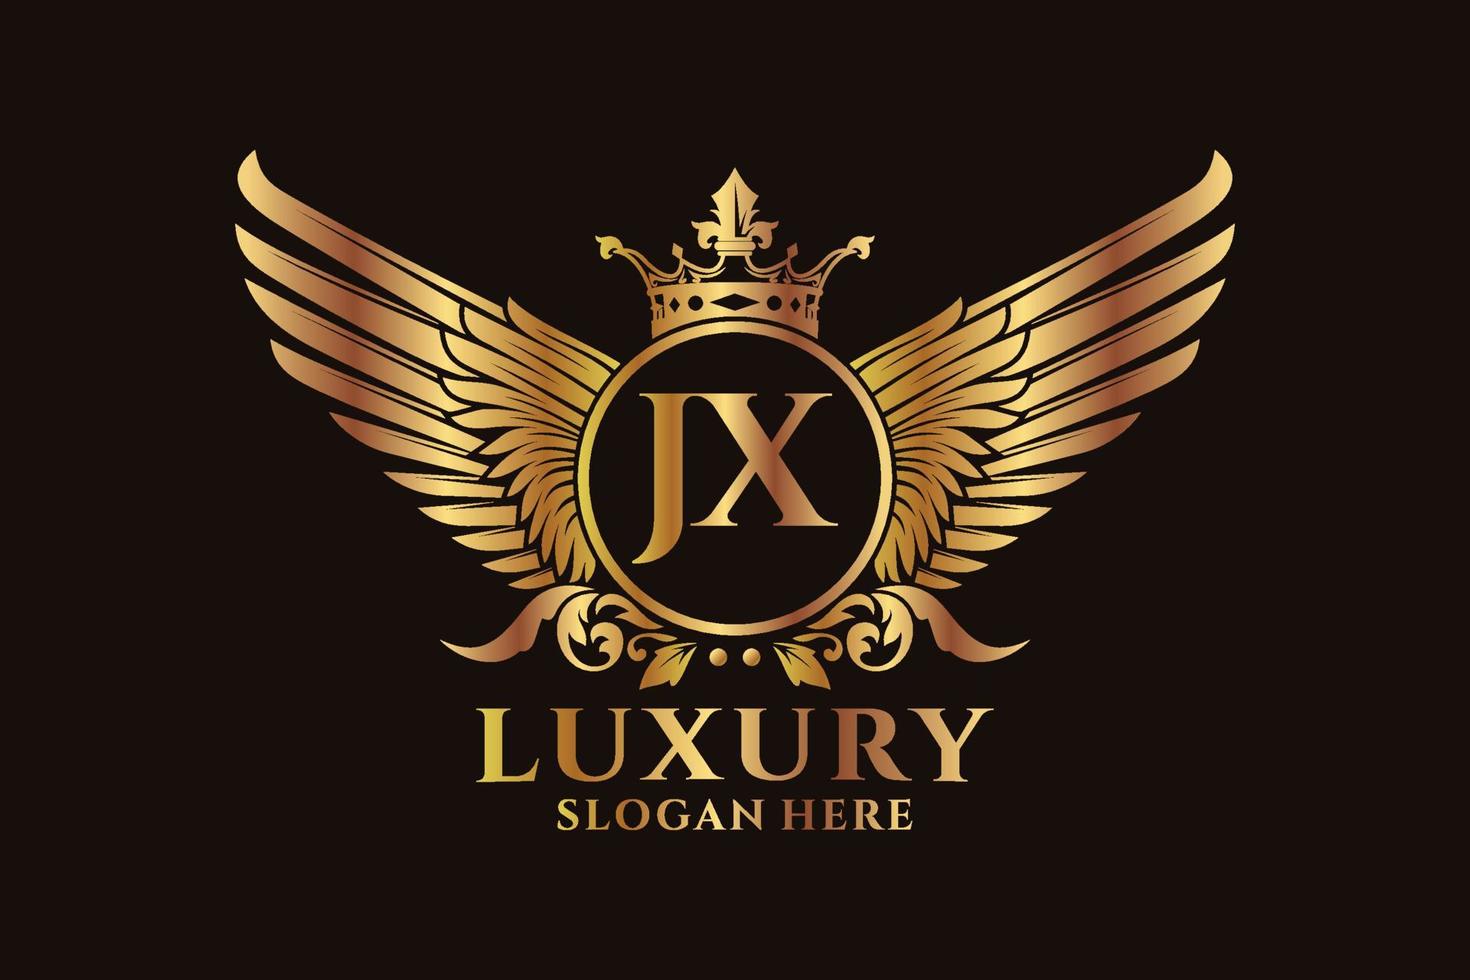 lusso reale ala lettera jx cresta oro colore logo vettore, vittoria logo, cresta logo, ala logo, vettore logo modello.